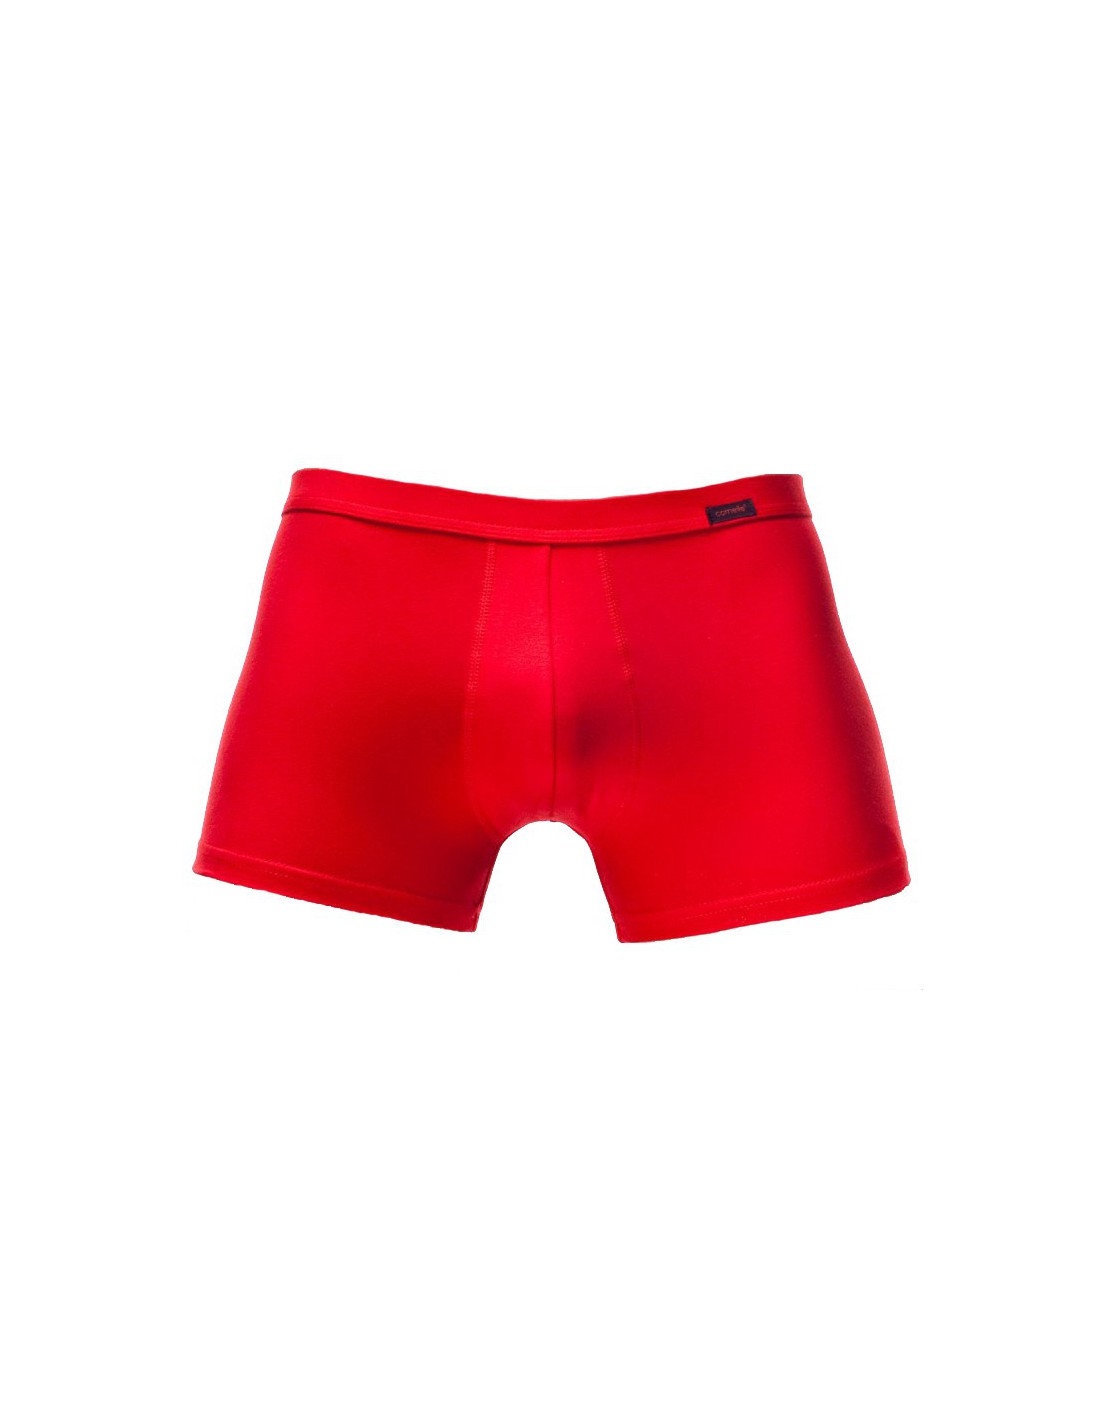 Men's Underwear red